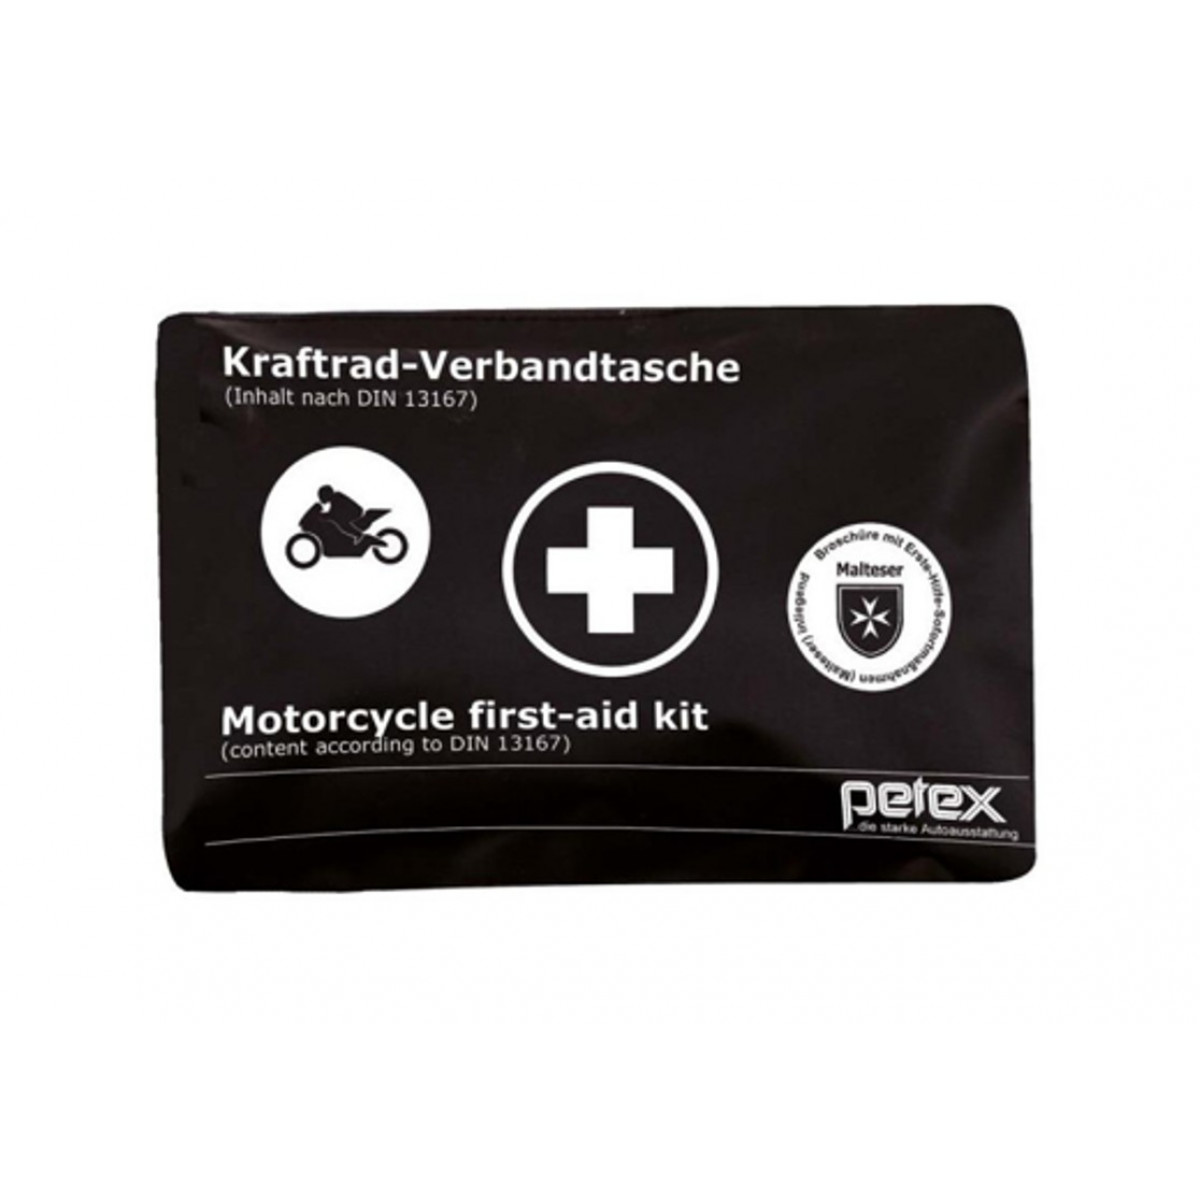 Kraftrad-Verbandtasche für Motorradfahrer und Biker